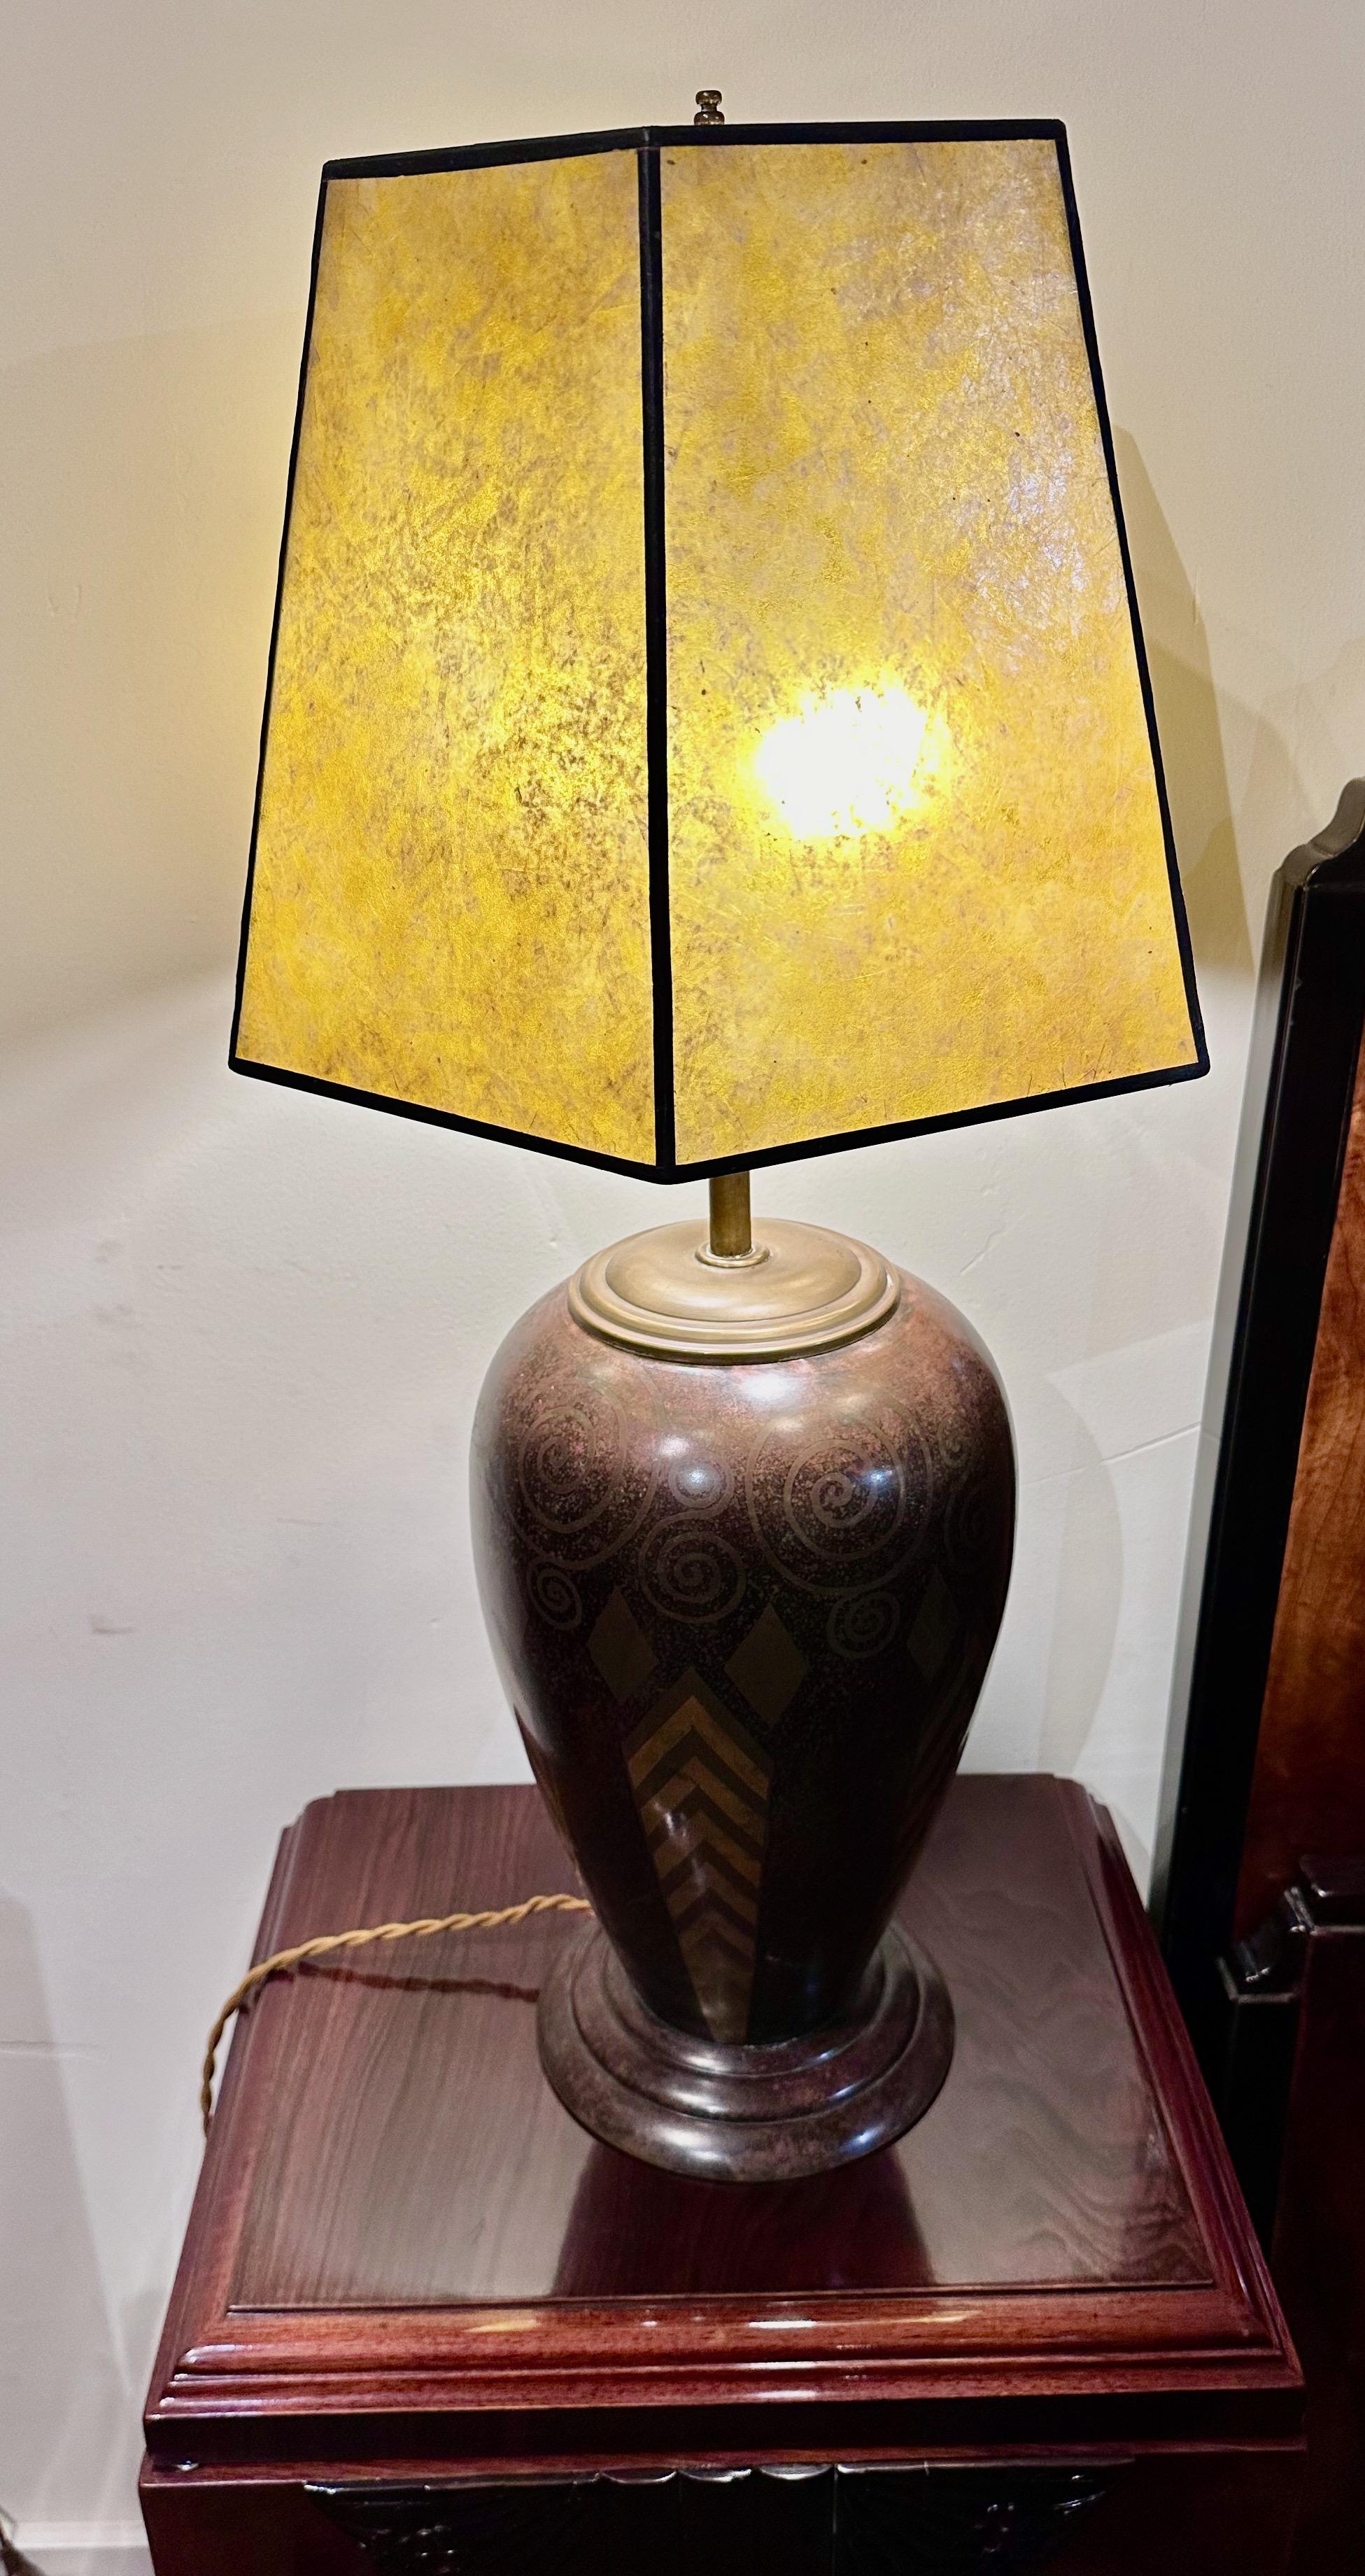 Diese exquisite Lampenvase aus den 1920er Jahren ist ein Zeugnis für meisterhafte Handwerkskunst und Design aus der Zeit des Art déco. Signiert in der Edition Jouvenia, geht dieses Stück über die bloße Funktionalität hinaus und dient als